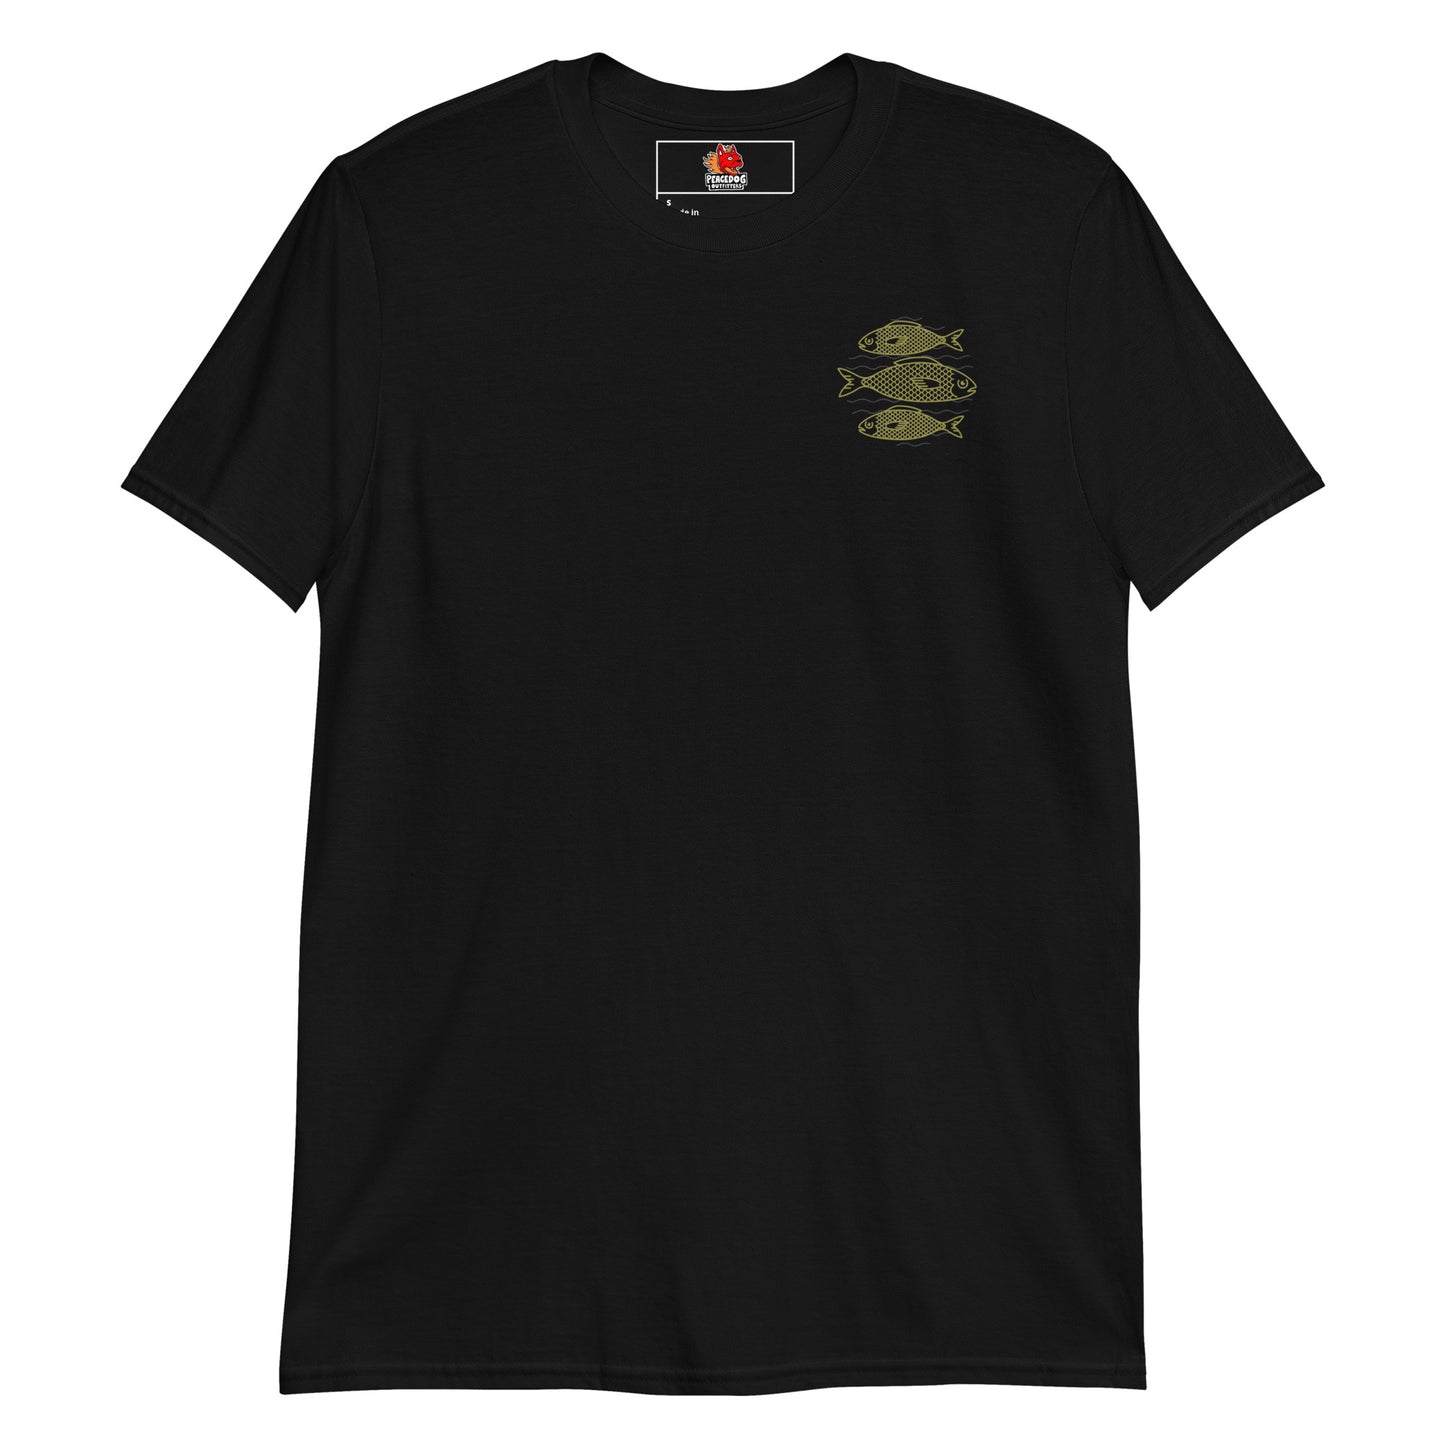 Fishing Gear T-Shirt